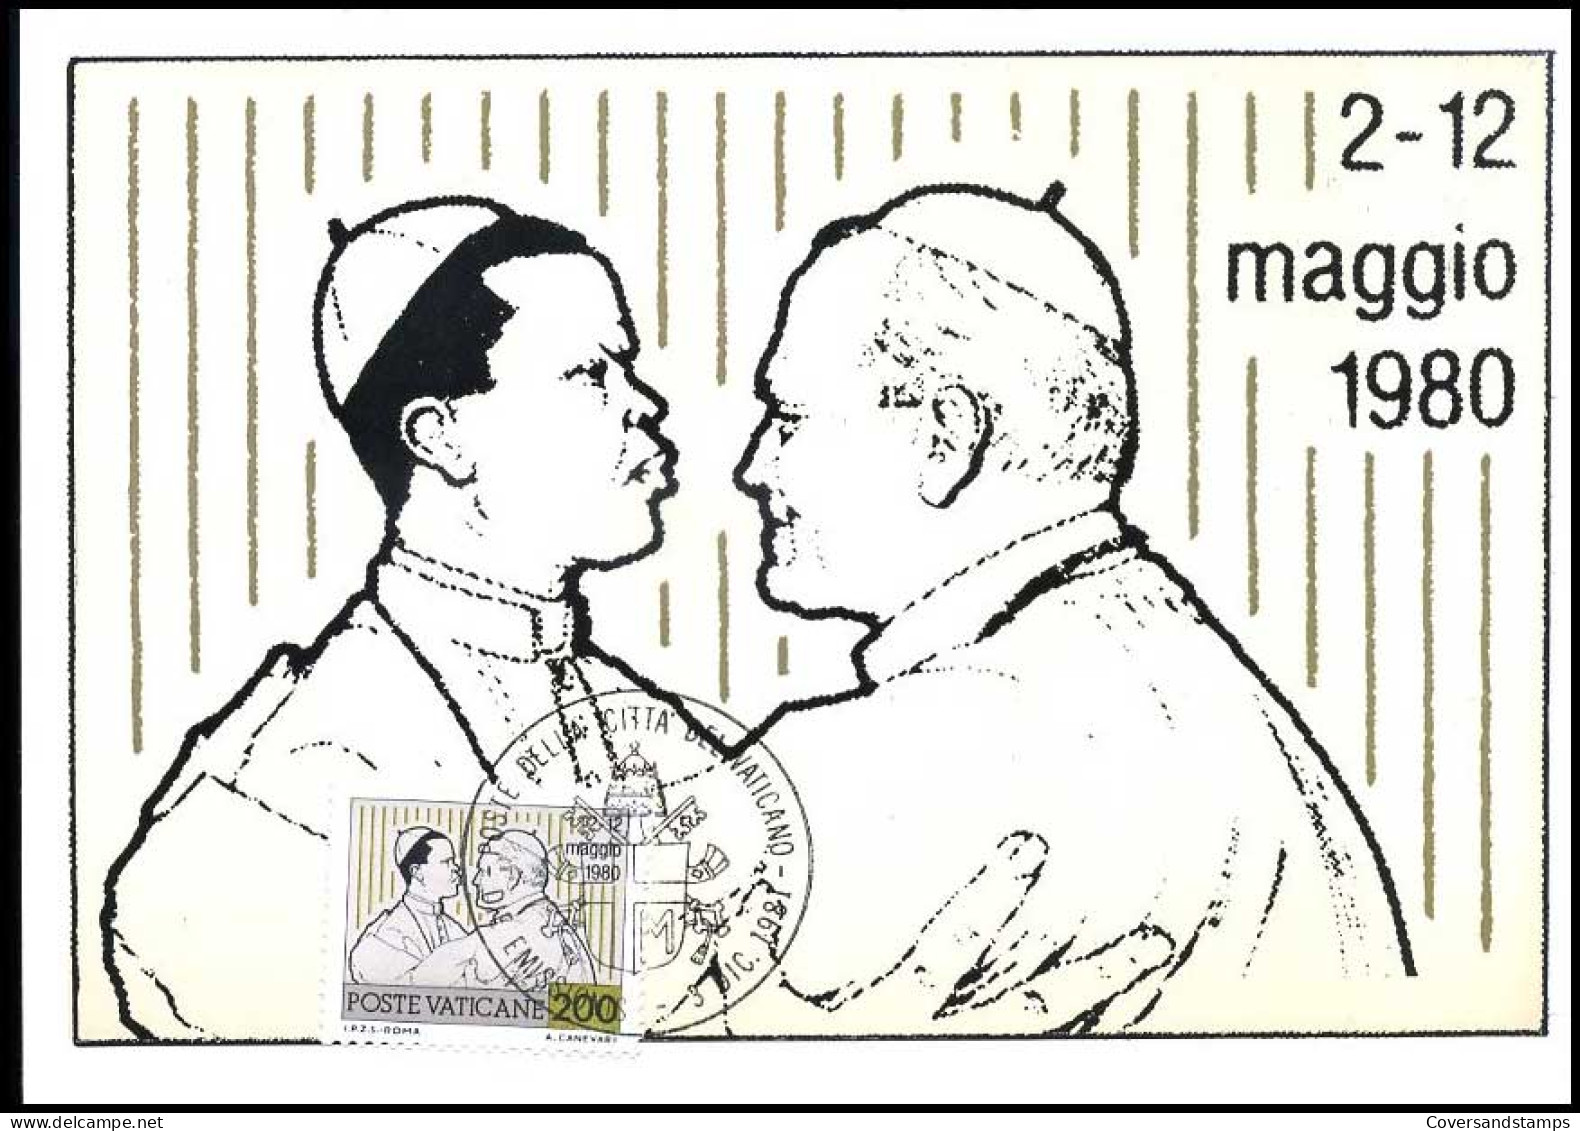 Vaticaan - MK - Joannes Paulus II : 2-12 Maggio 1980                          - Cartes-Maximum (CM)